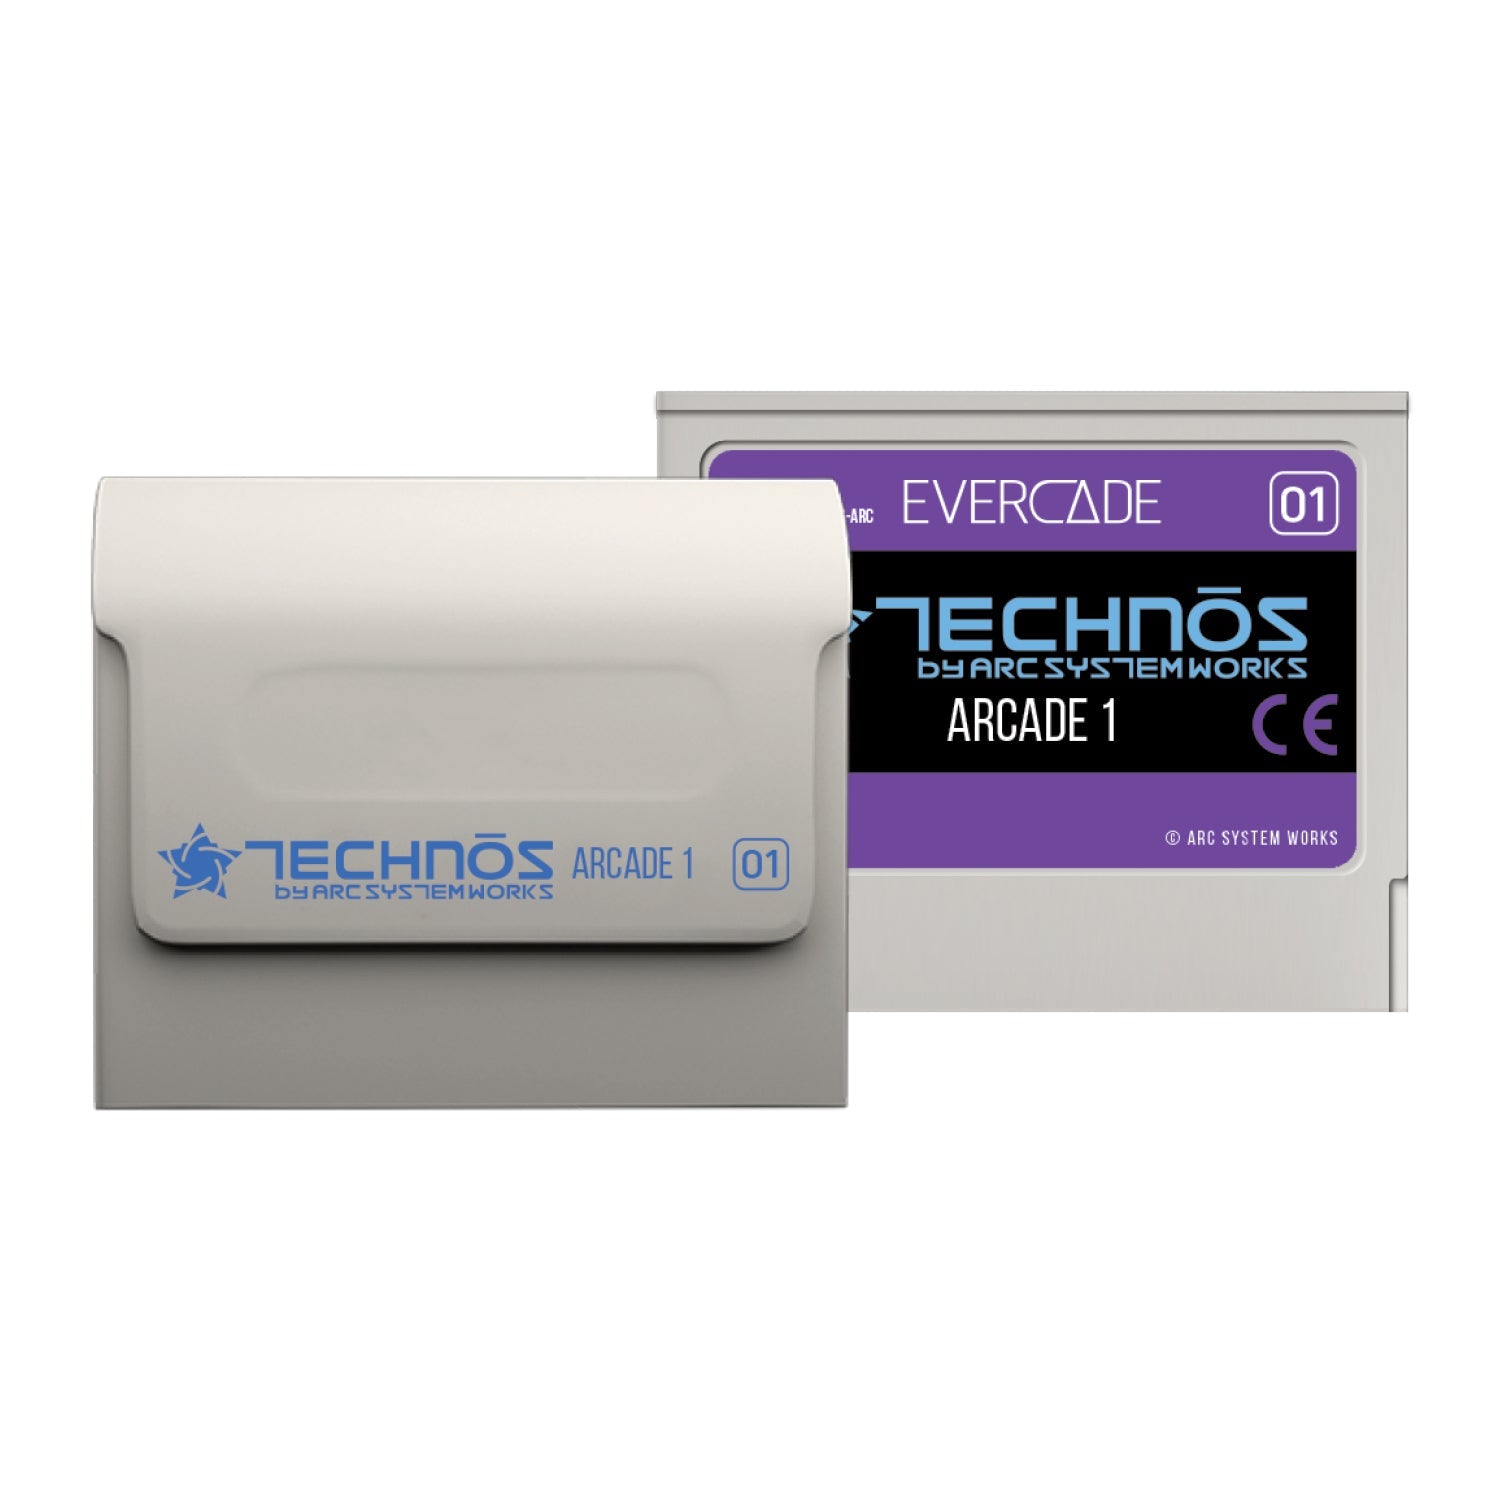 #01 Technos Arcade 1 - Evercade Cartridge